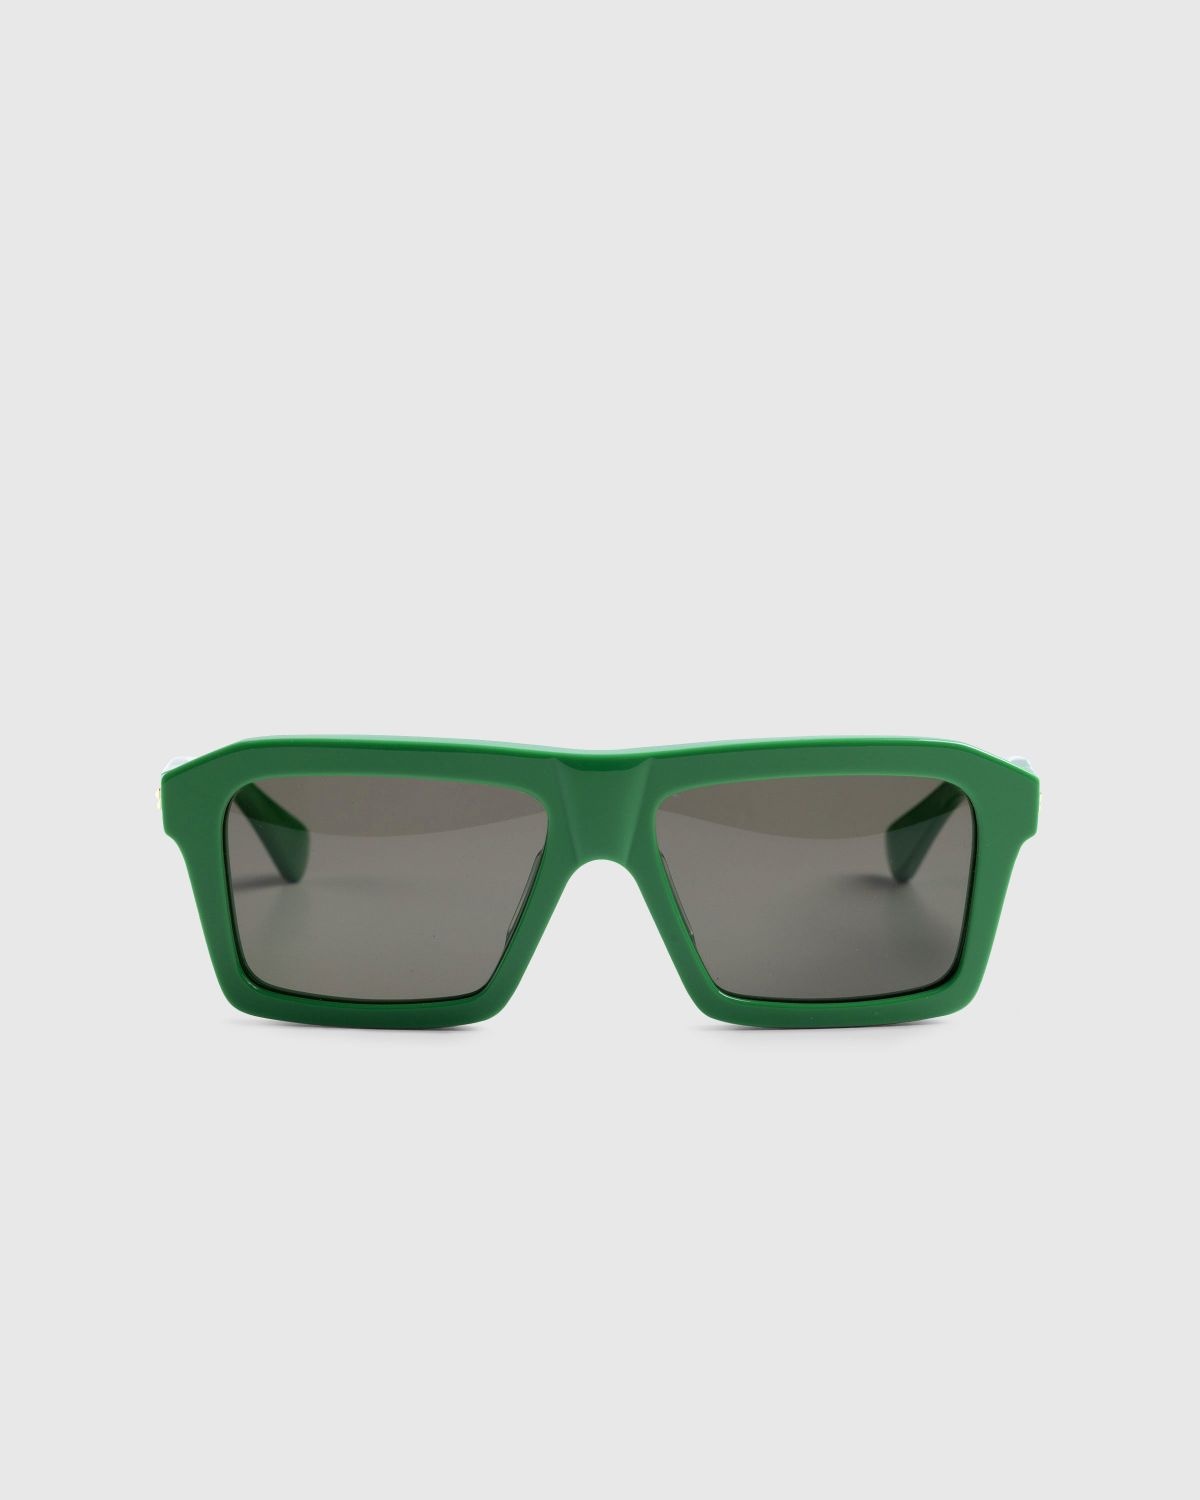 Bottega Veneta – Classic Square Sunglasses Green/Green - 1